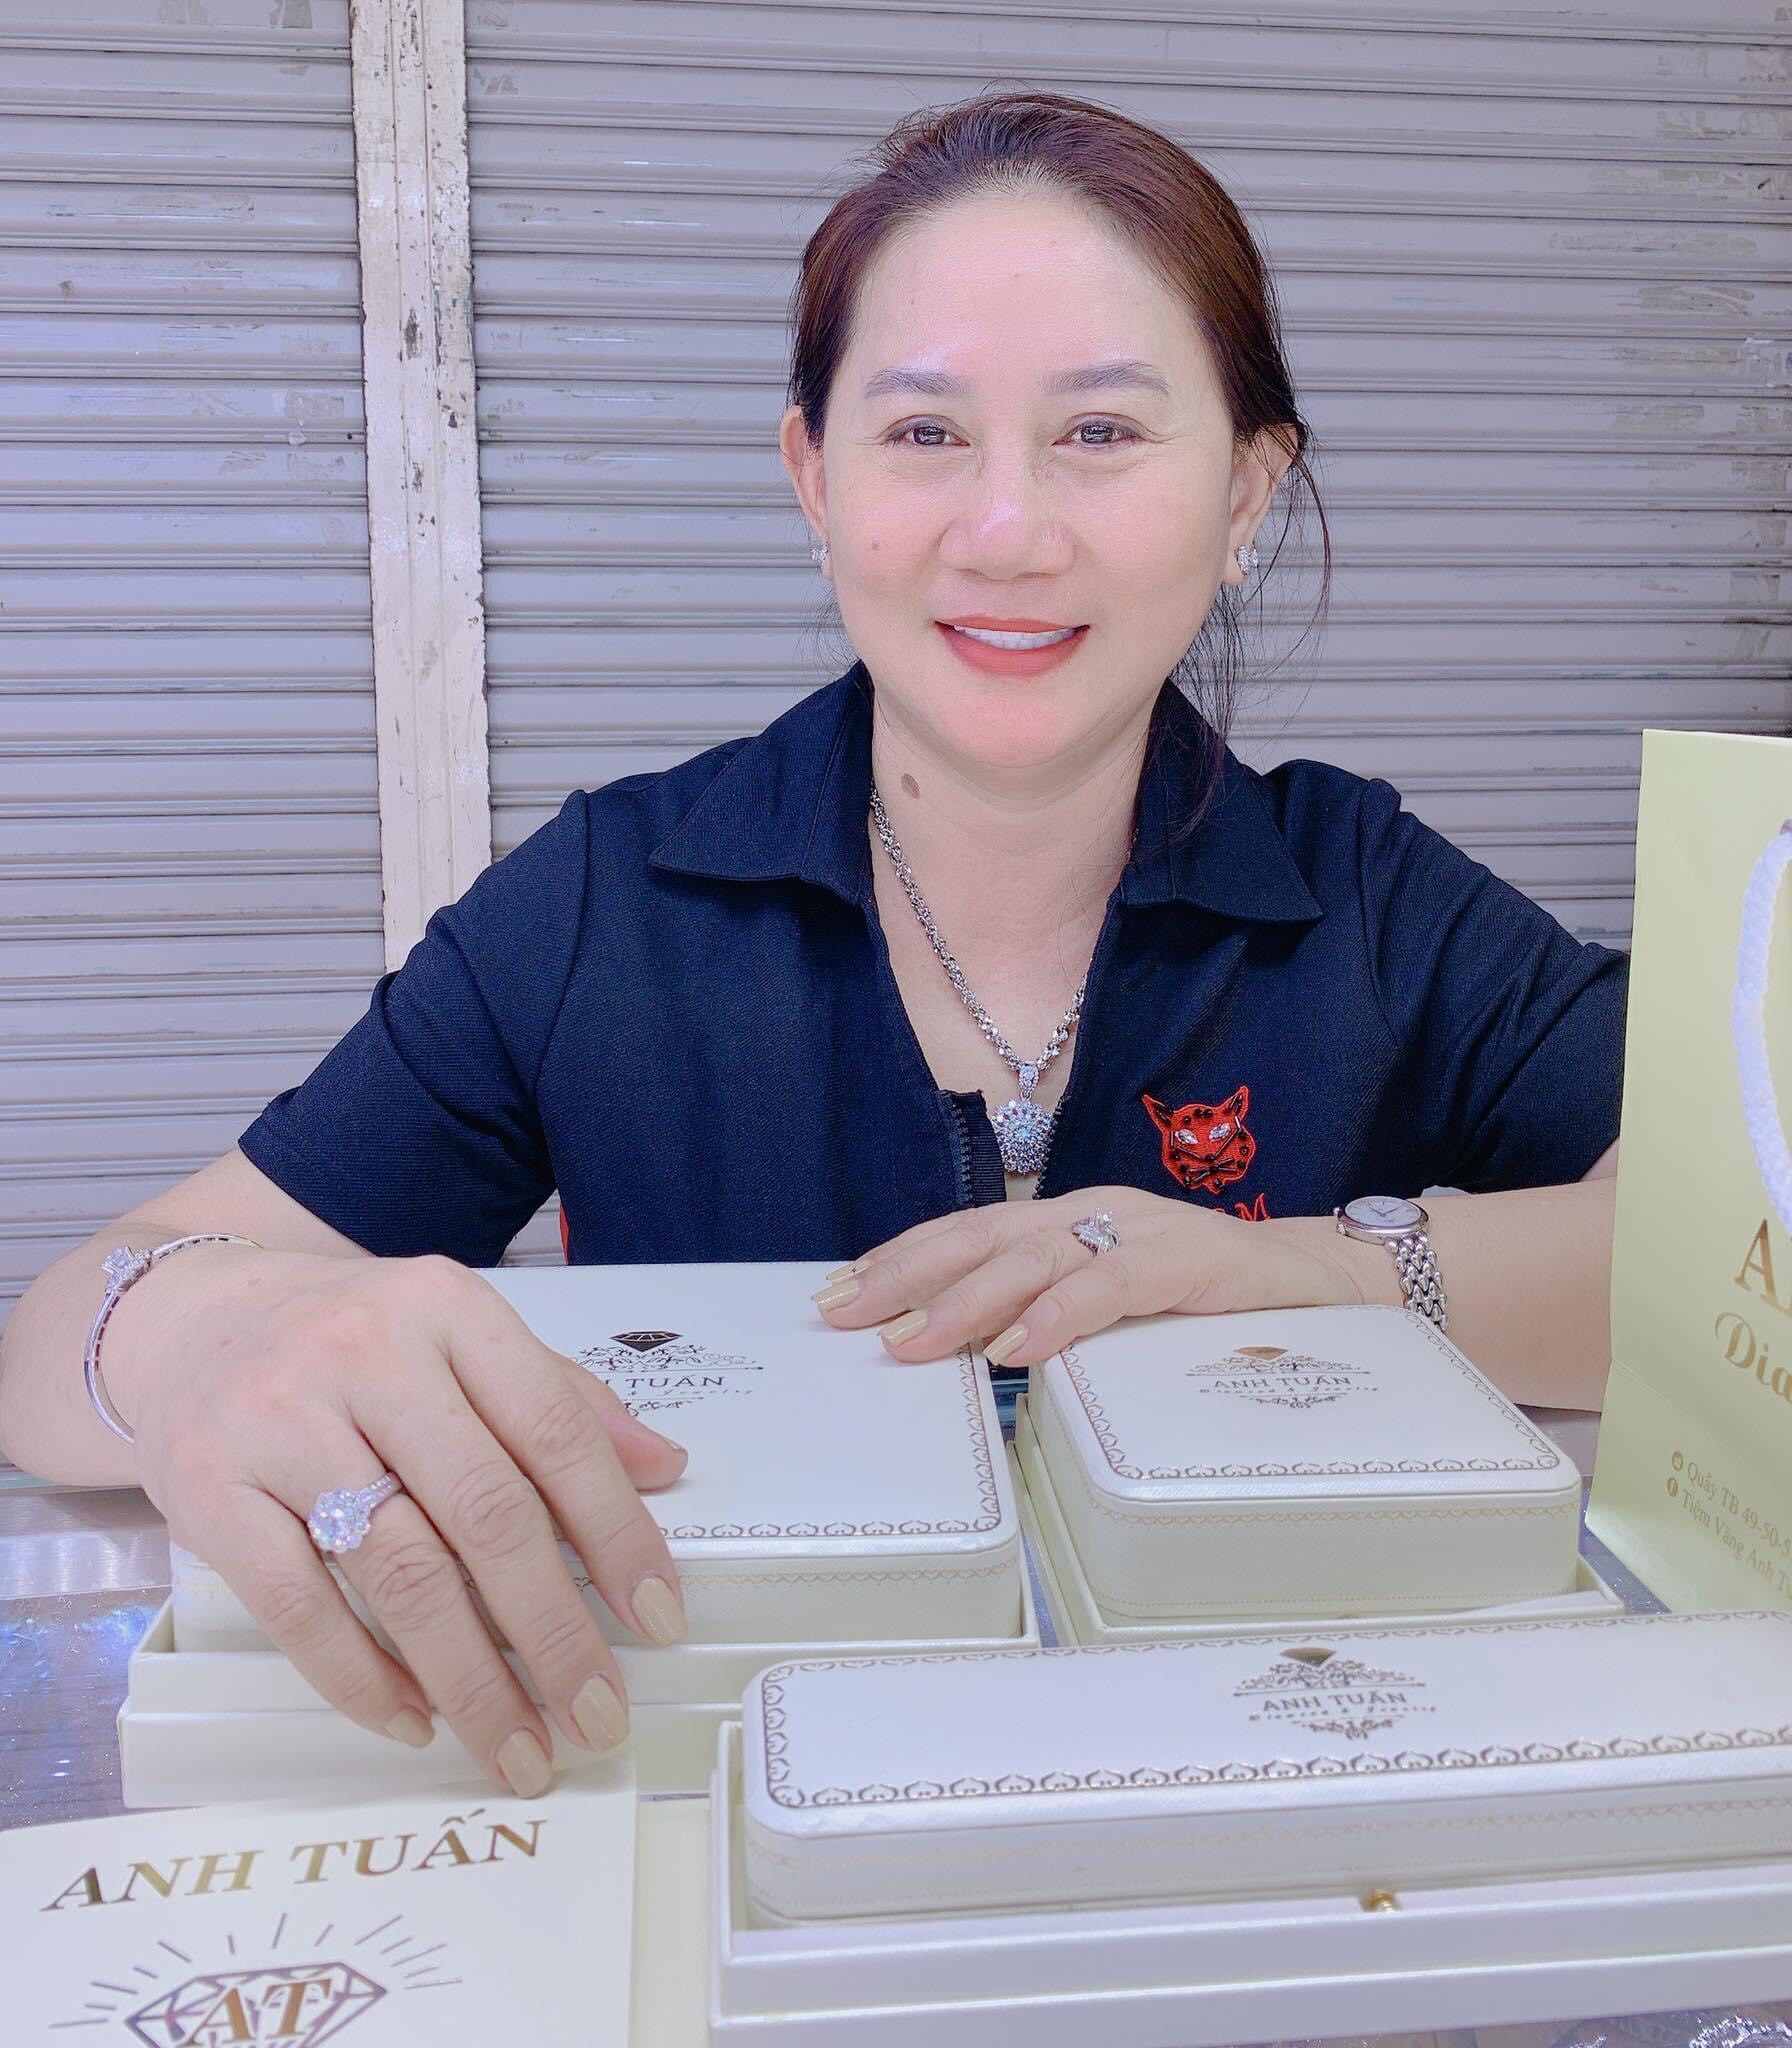  Vị khách quen của Anh Tuấn An Đông Jewelry rất hài lòng về sản phẩm, thường xuyên giới thiệu cửa hàng với bạn bè, người thân. 